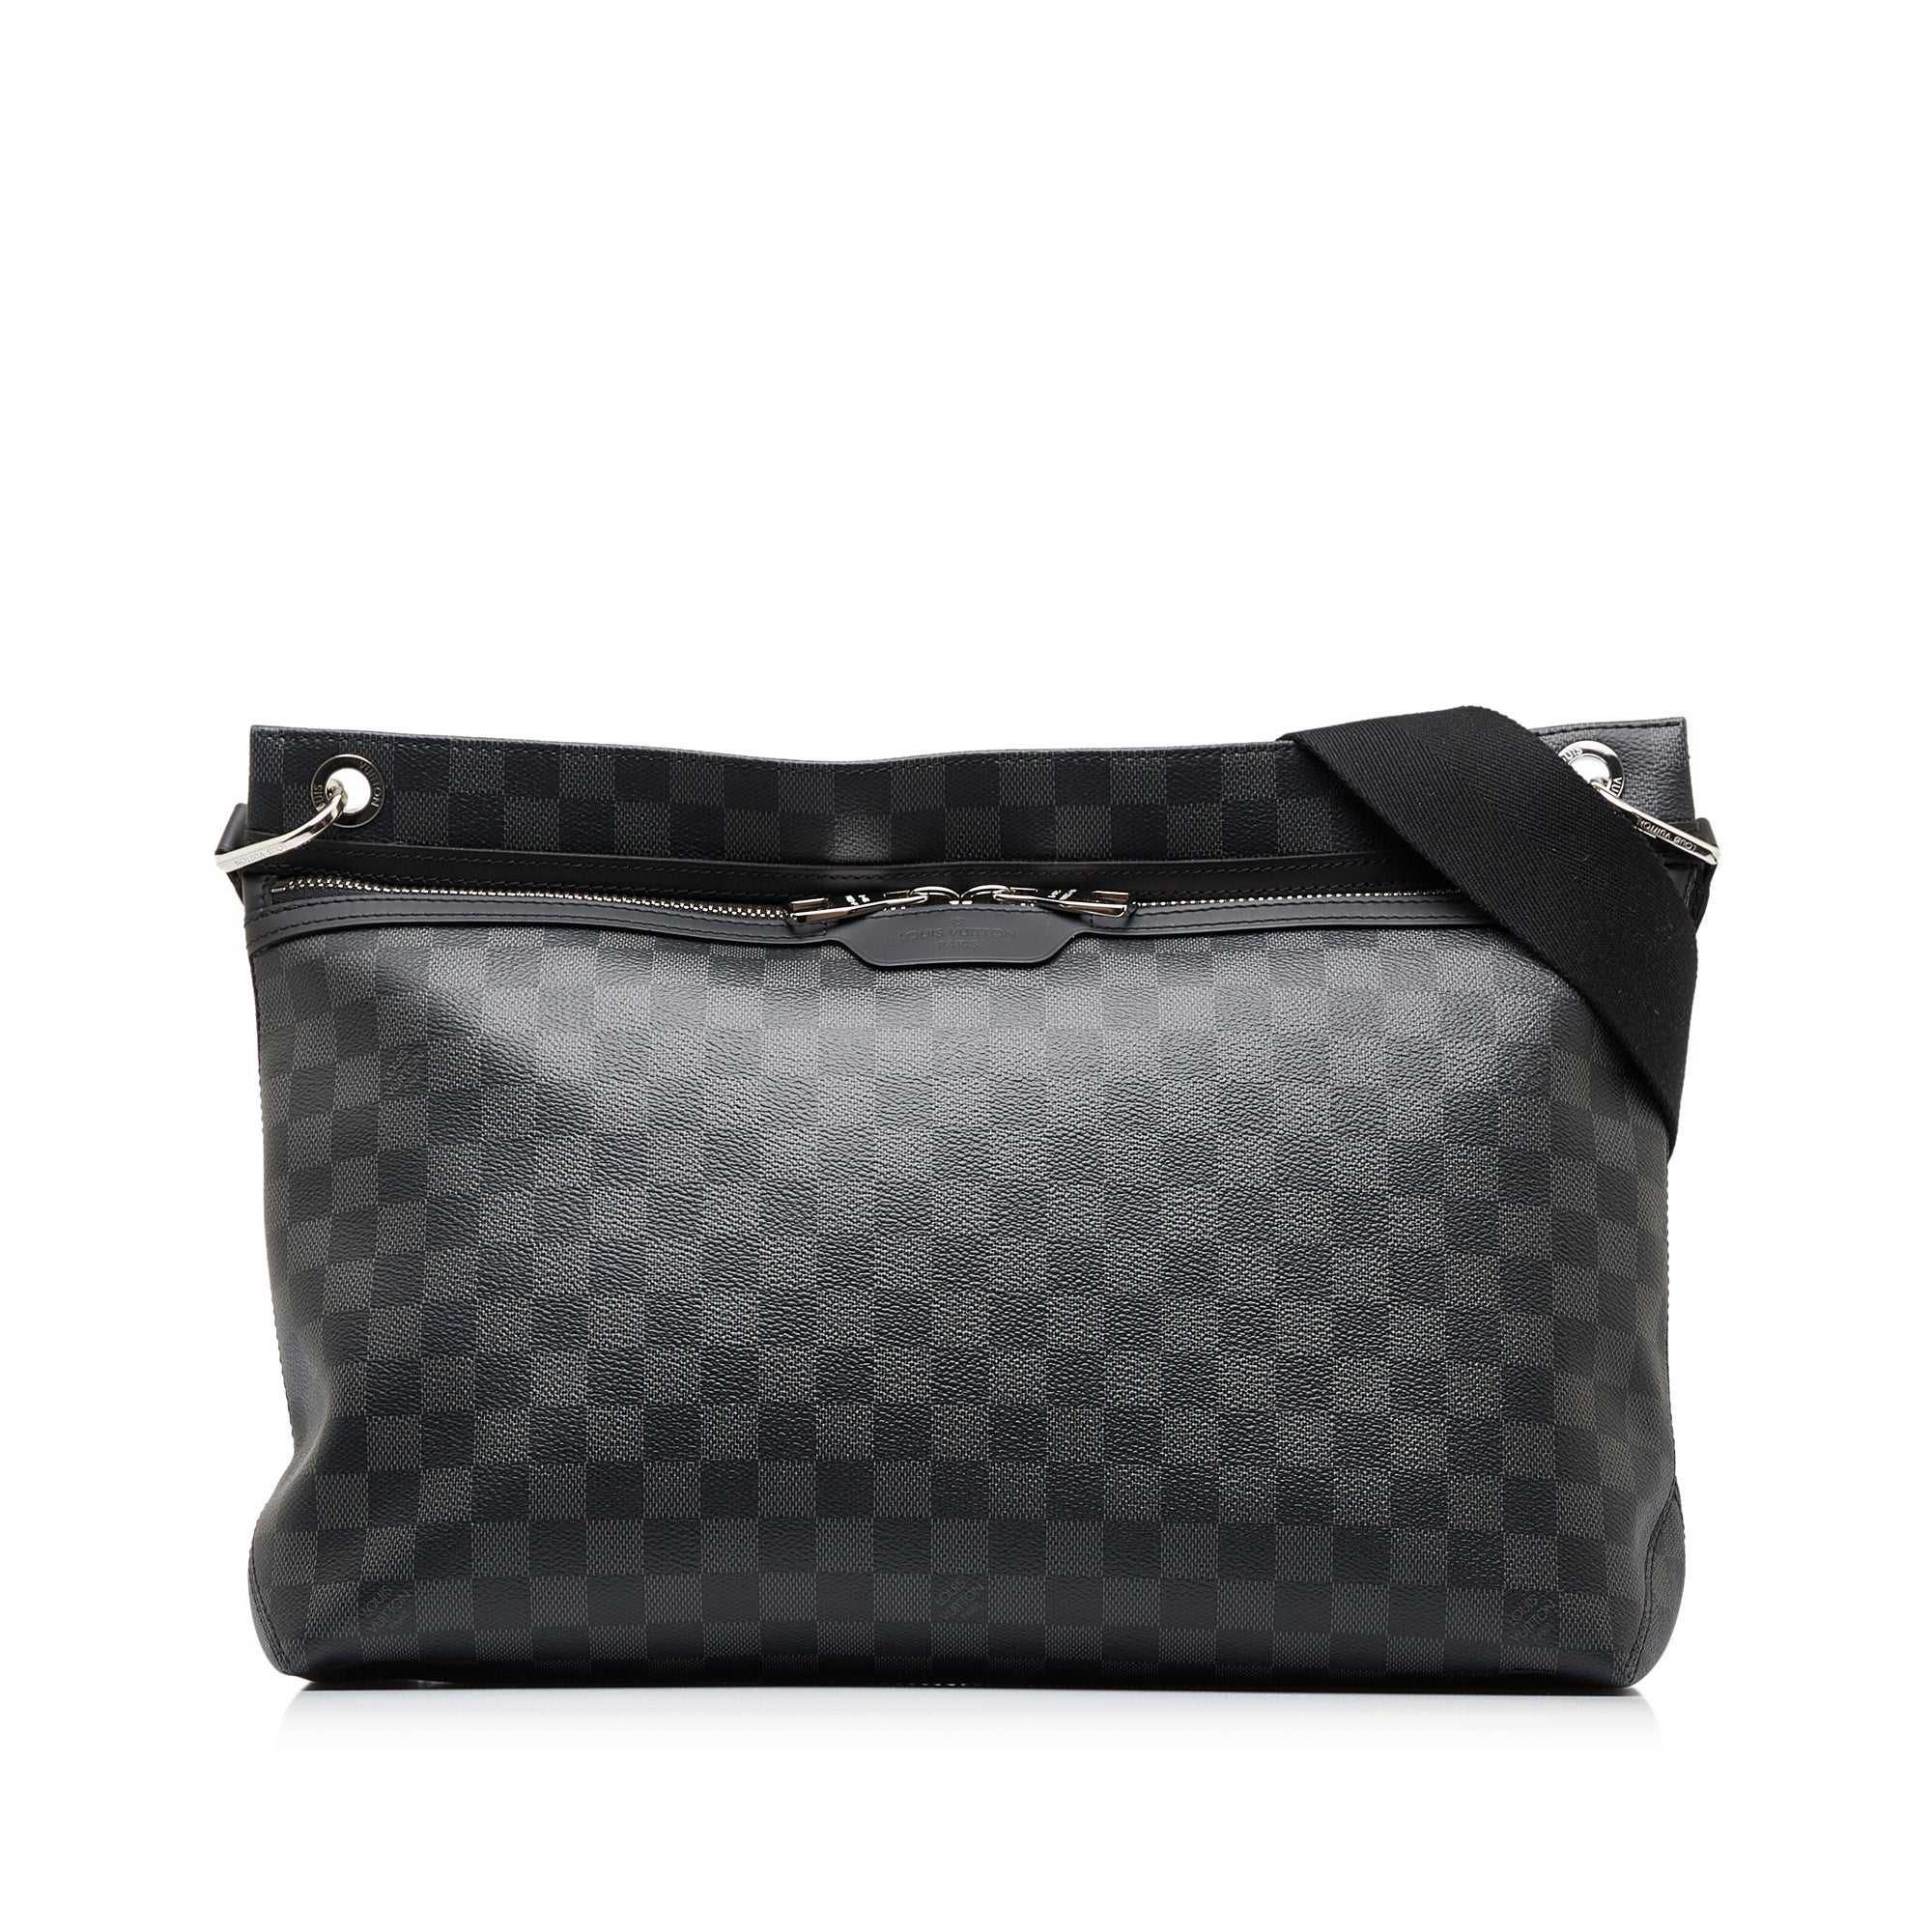 Louis Vuitton Mick PM Damier Graphite Canvas Shoulder Bag on SALE